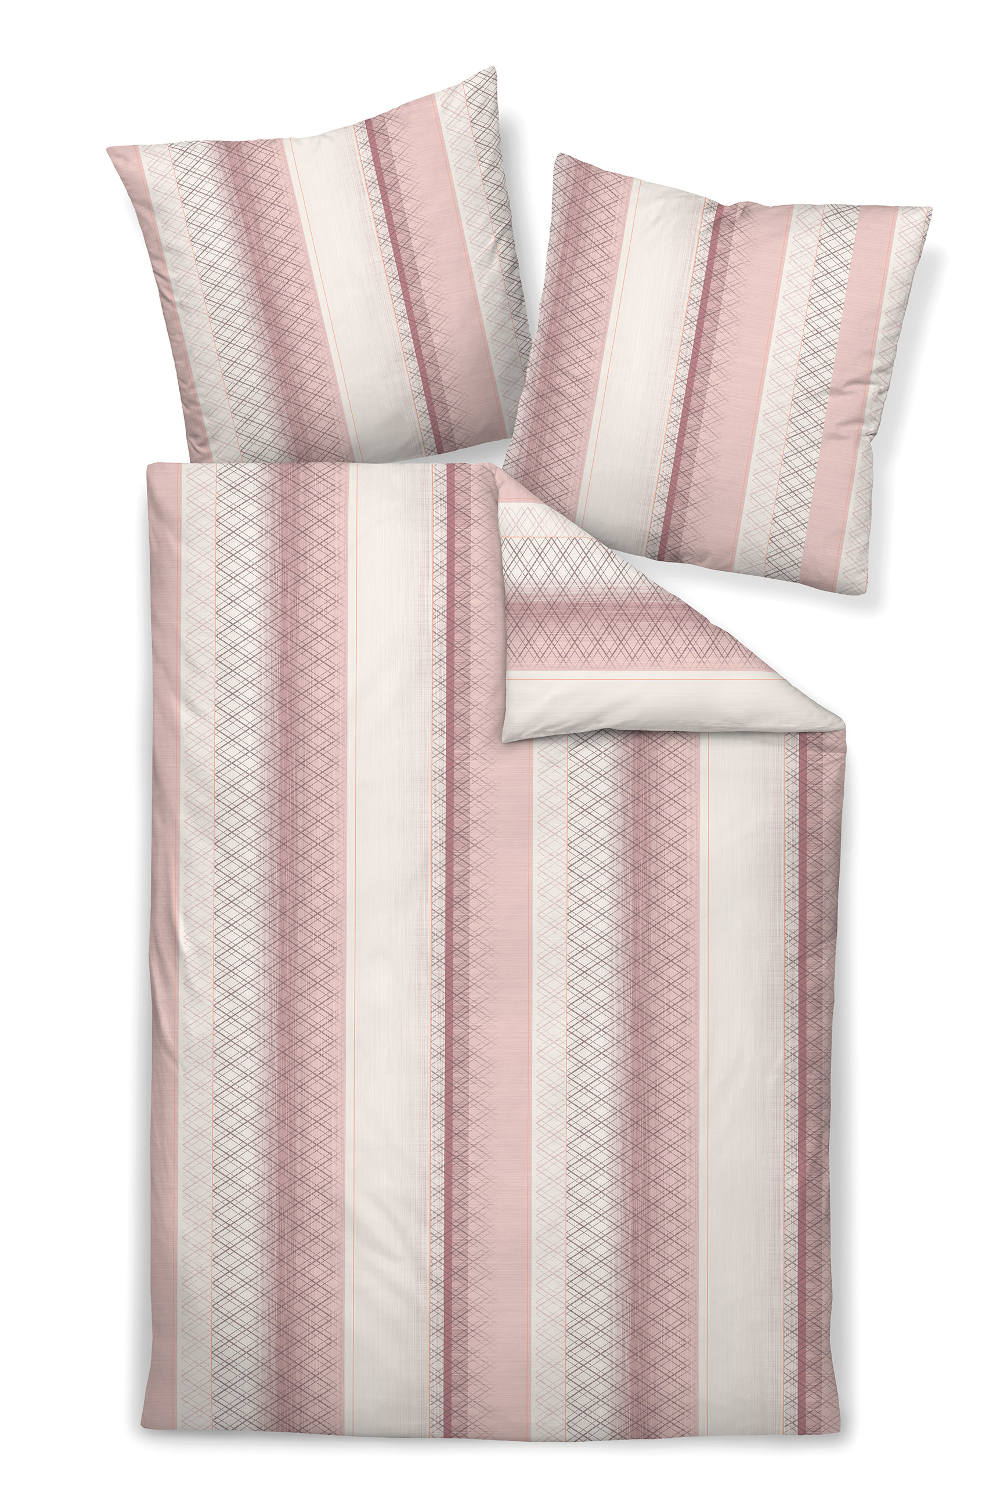 Janine Jersey Bettwäsche Carmen rosa/weiß gestreift aus 100% Baumwolle, 135x200cm 